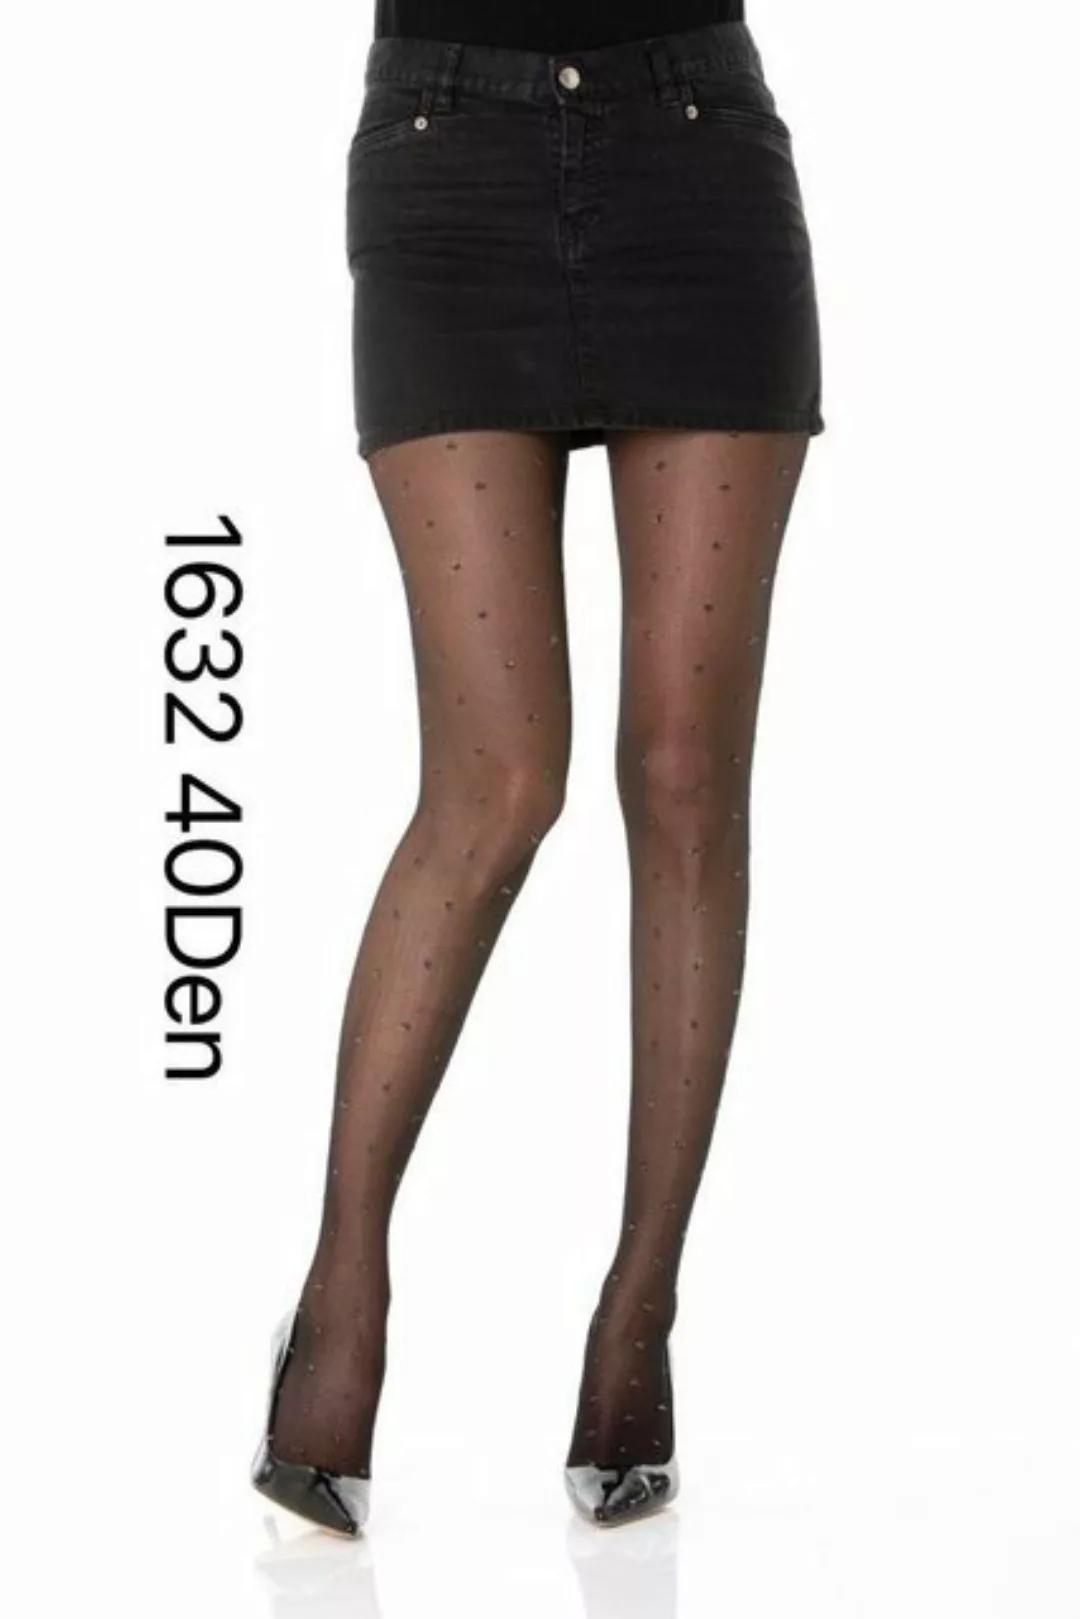 COFI 1453 Leggings Damen Strumpfhose Muster Optik 40 DEN für Frauen Collant günstig online kaufen